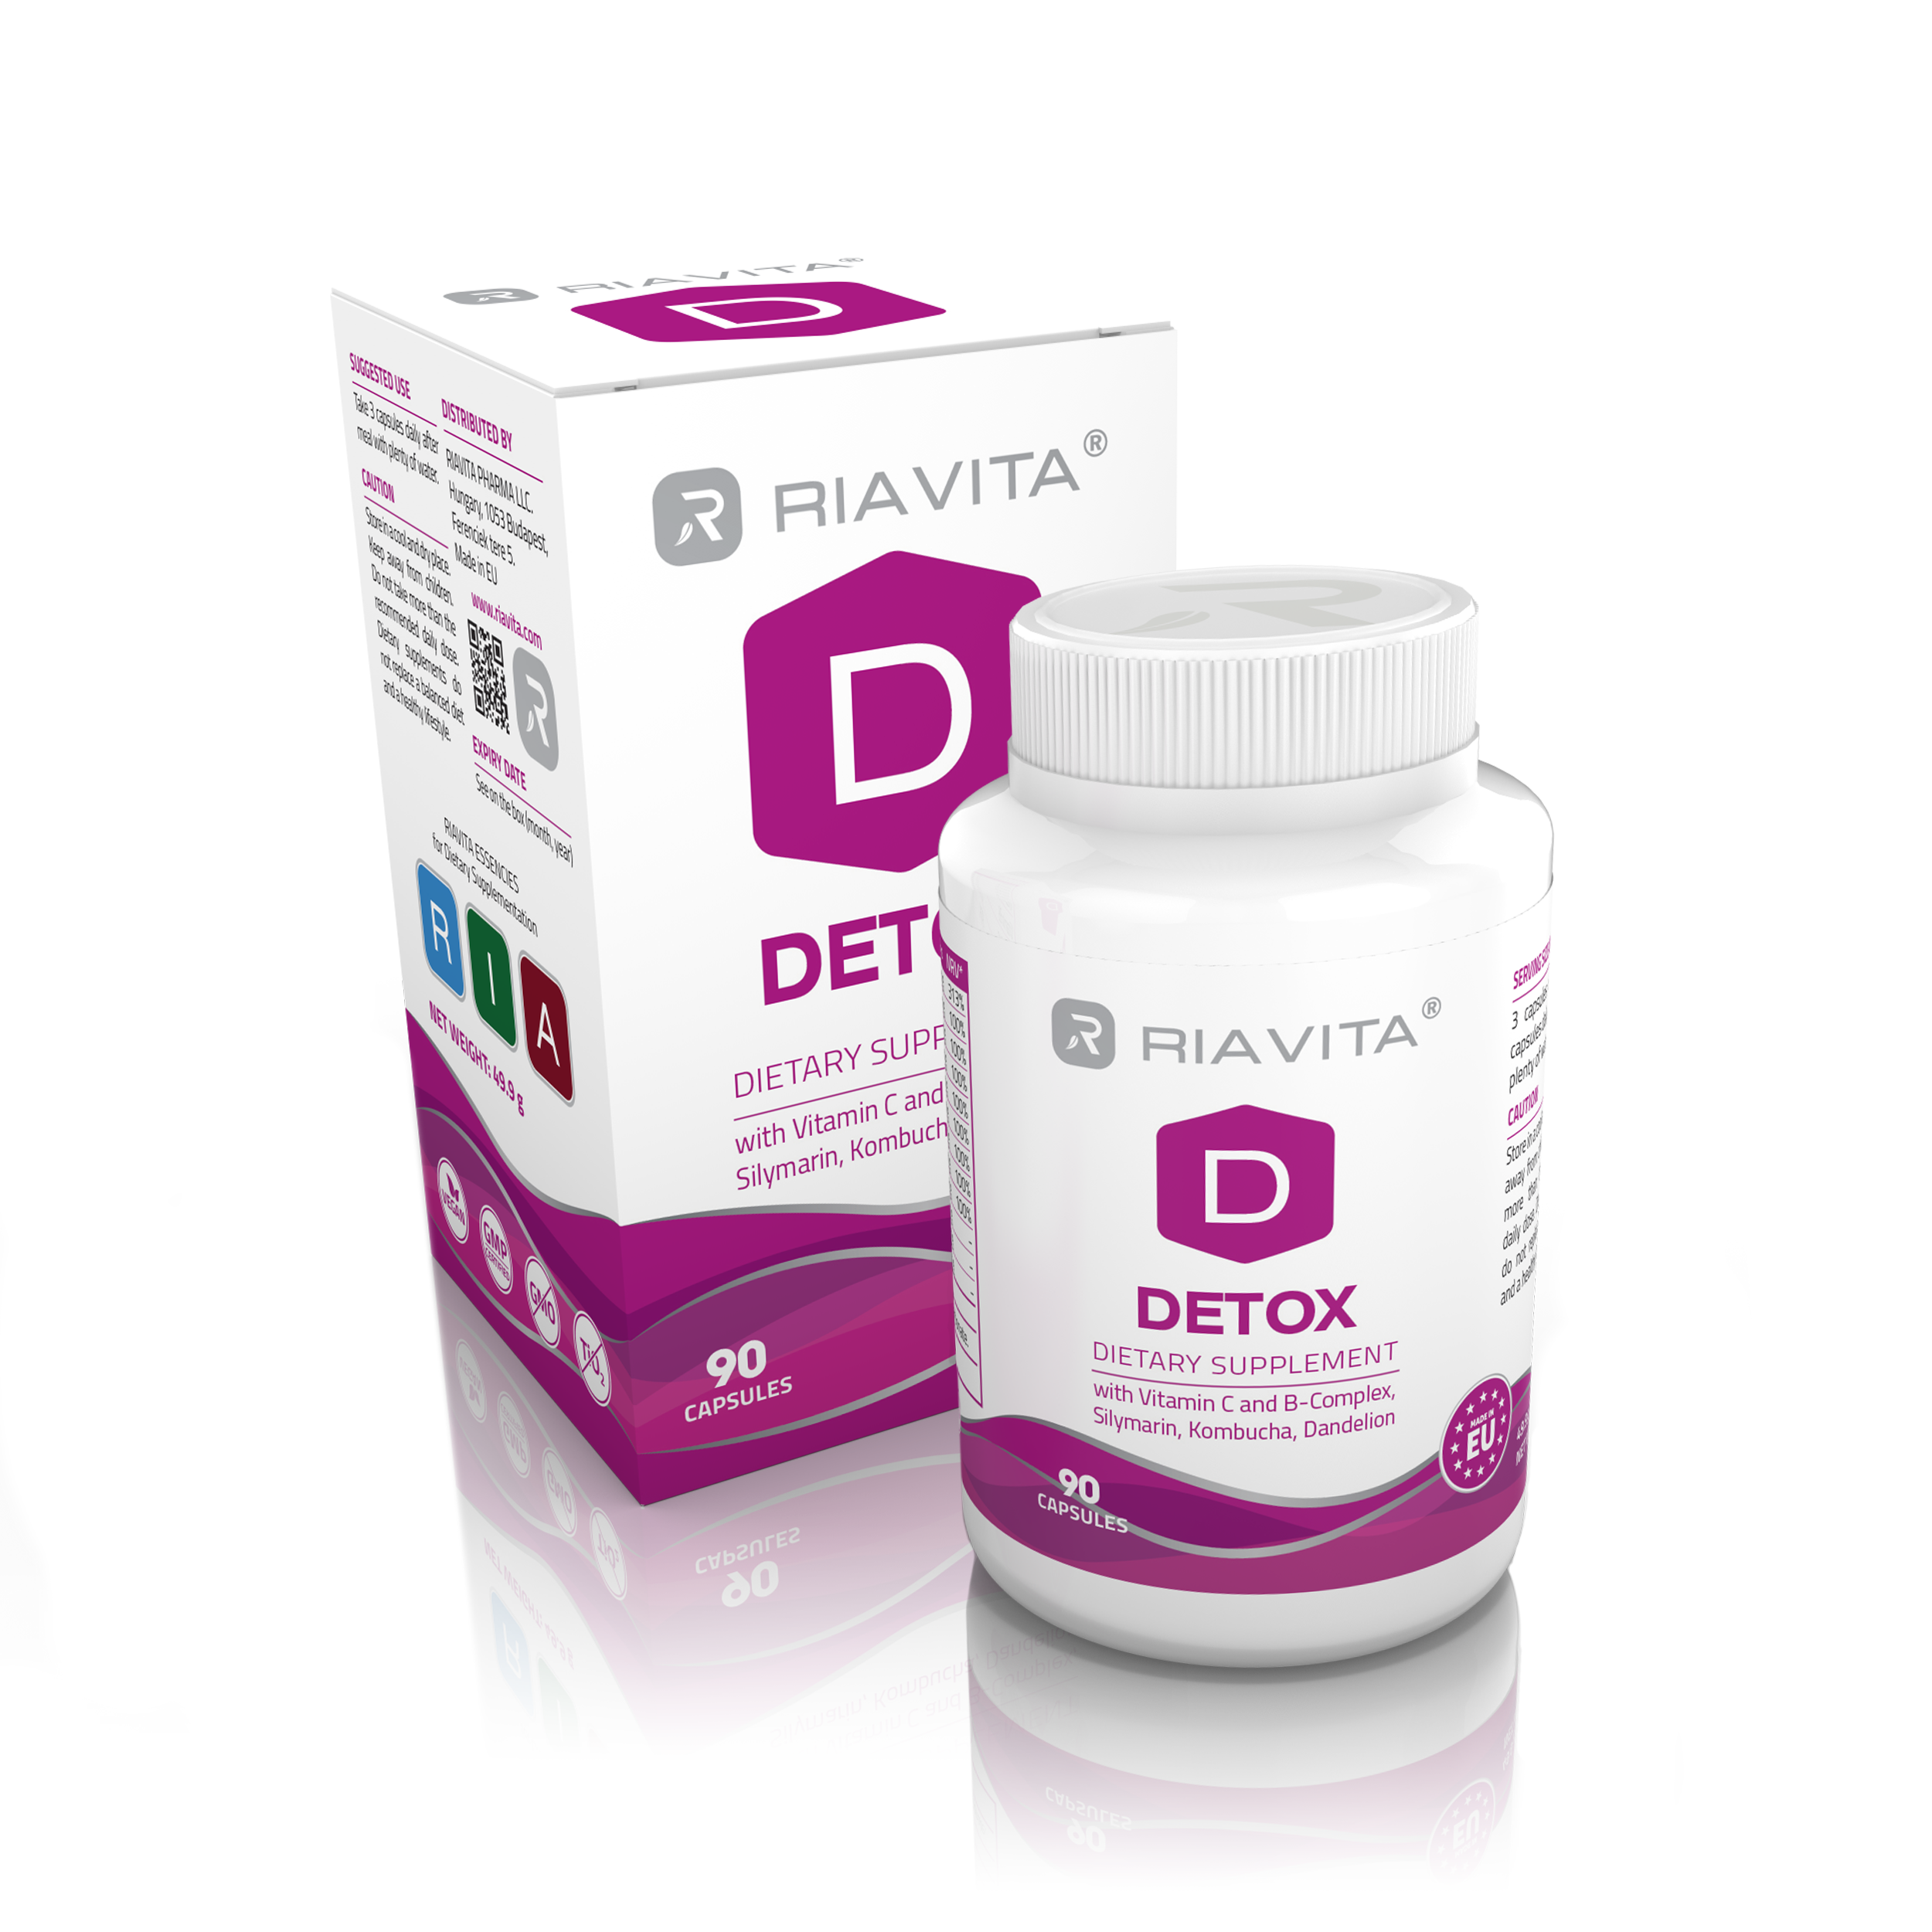 RIAVITA Detox méregtelenítő étrend-kiegészítő (90 db kapszula)